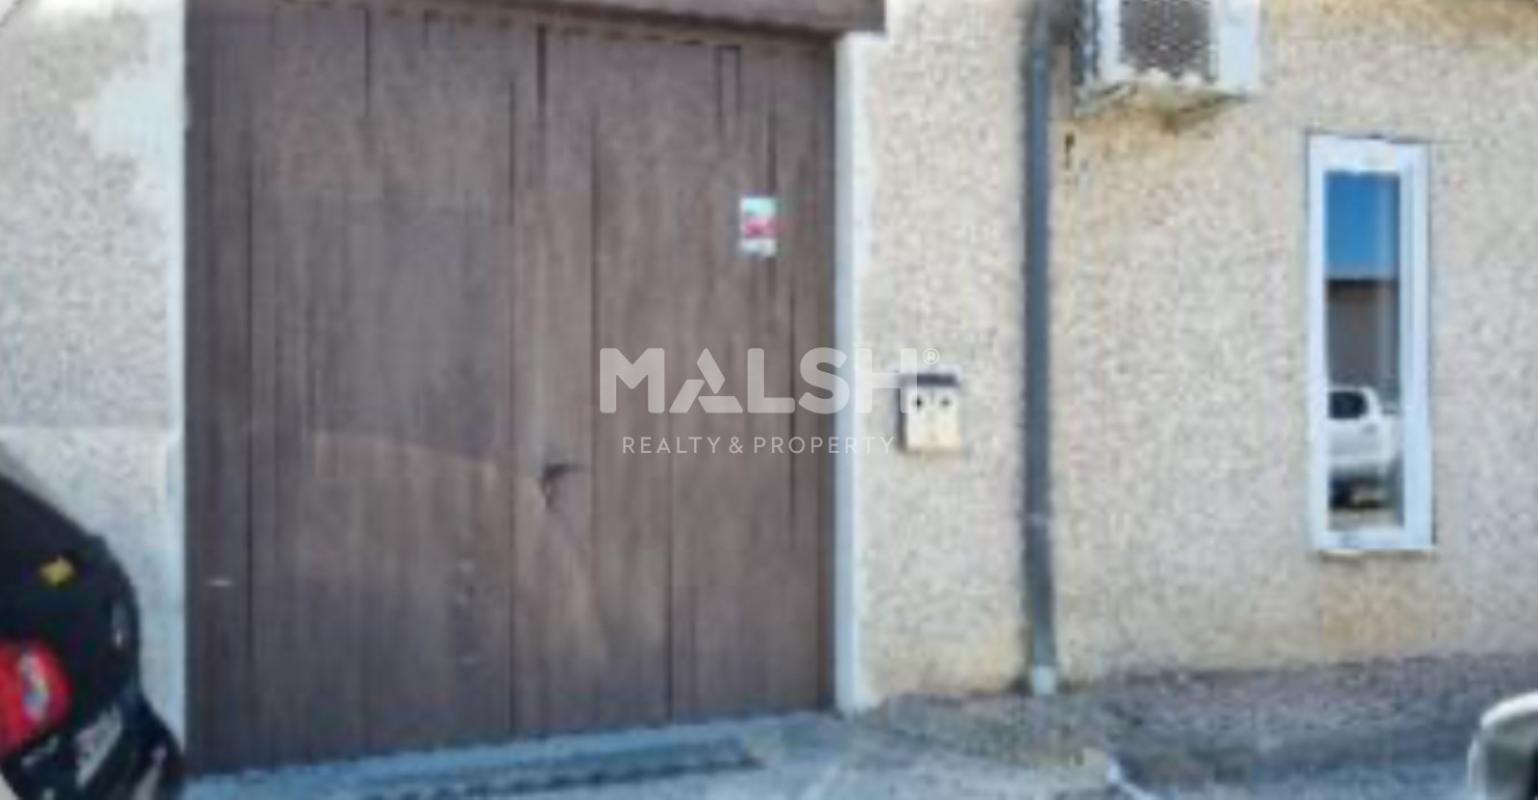 MALSH Realty & Property - Activité - Lyon Nord Est (Rhône Amont) - Décines-Charpieu - 5